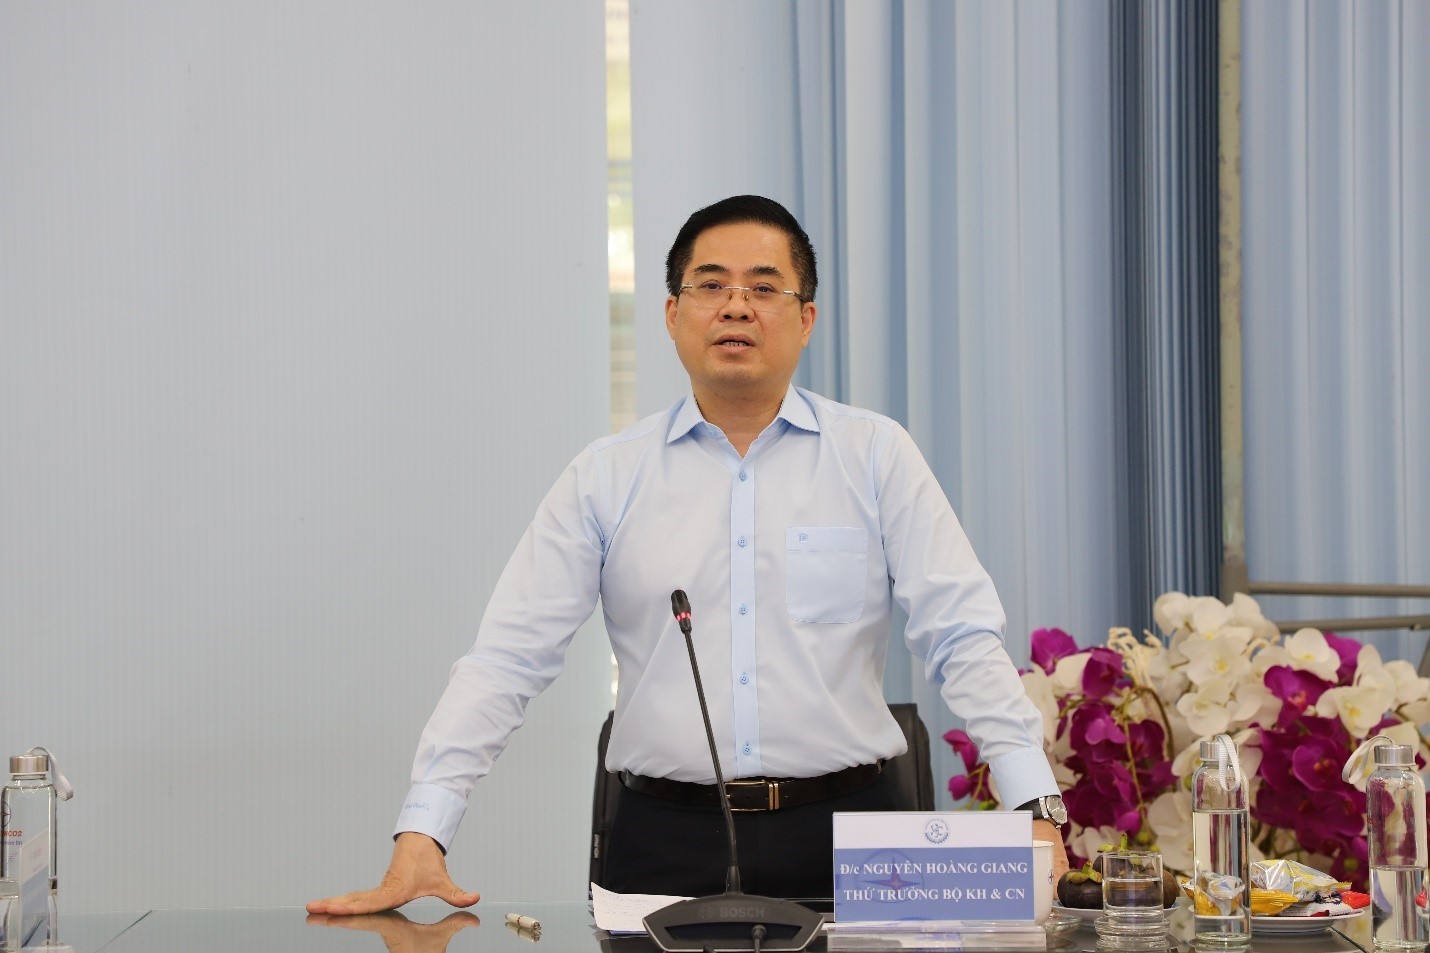 Thứ trưởng Bộ KH&CN Nguyễn Hoàng Giang phát biểu chỉ đạo tại buổi làm việc